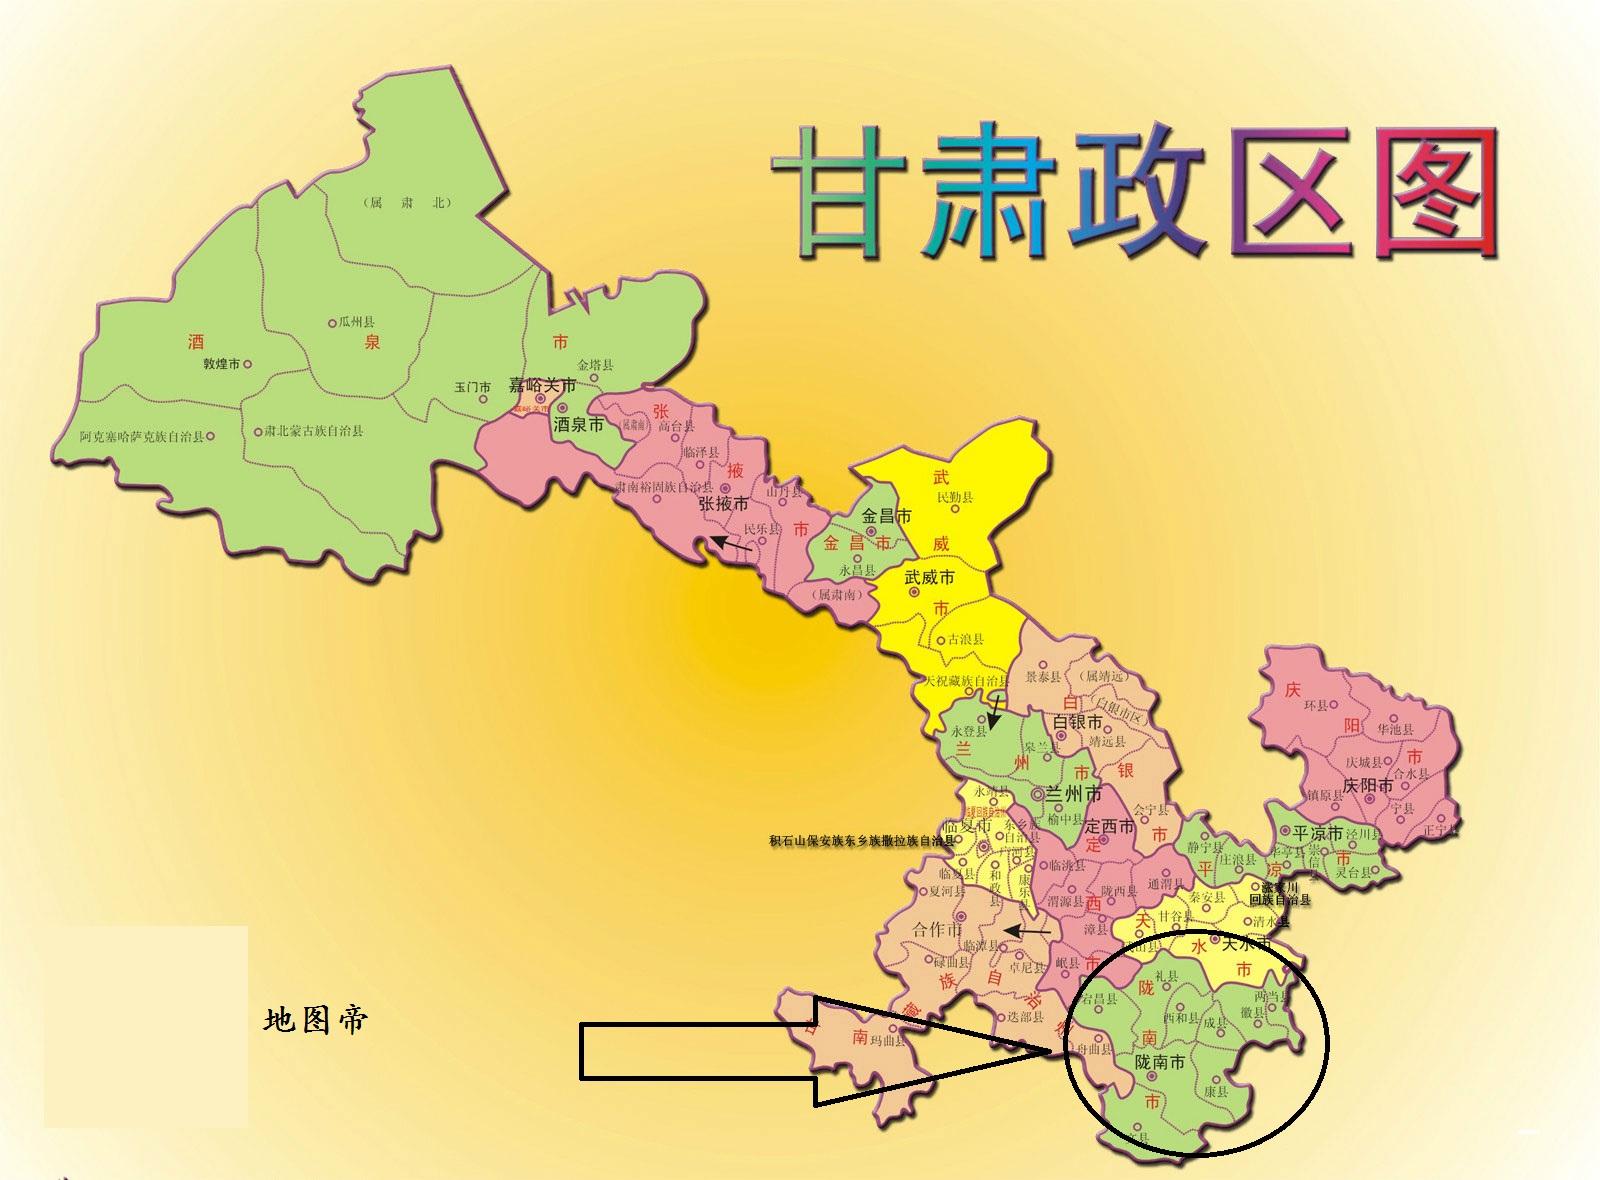 陇南市,甘肃省的地级市,地理上,却被规划到长江水系地区.图片